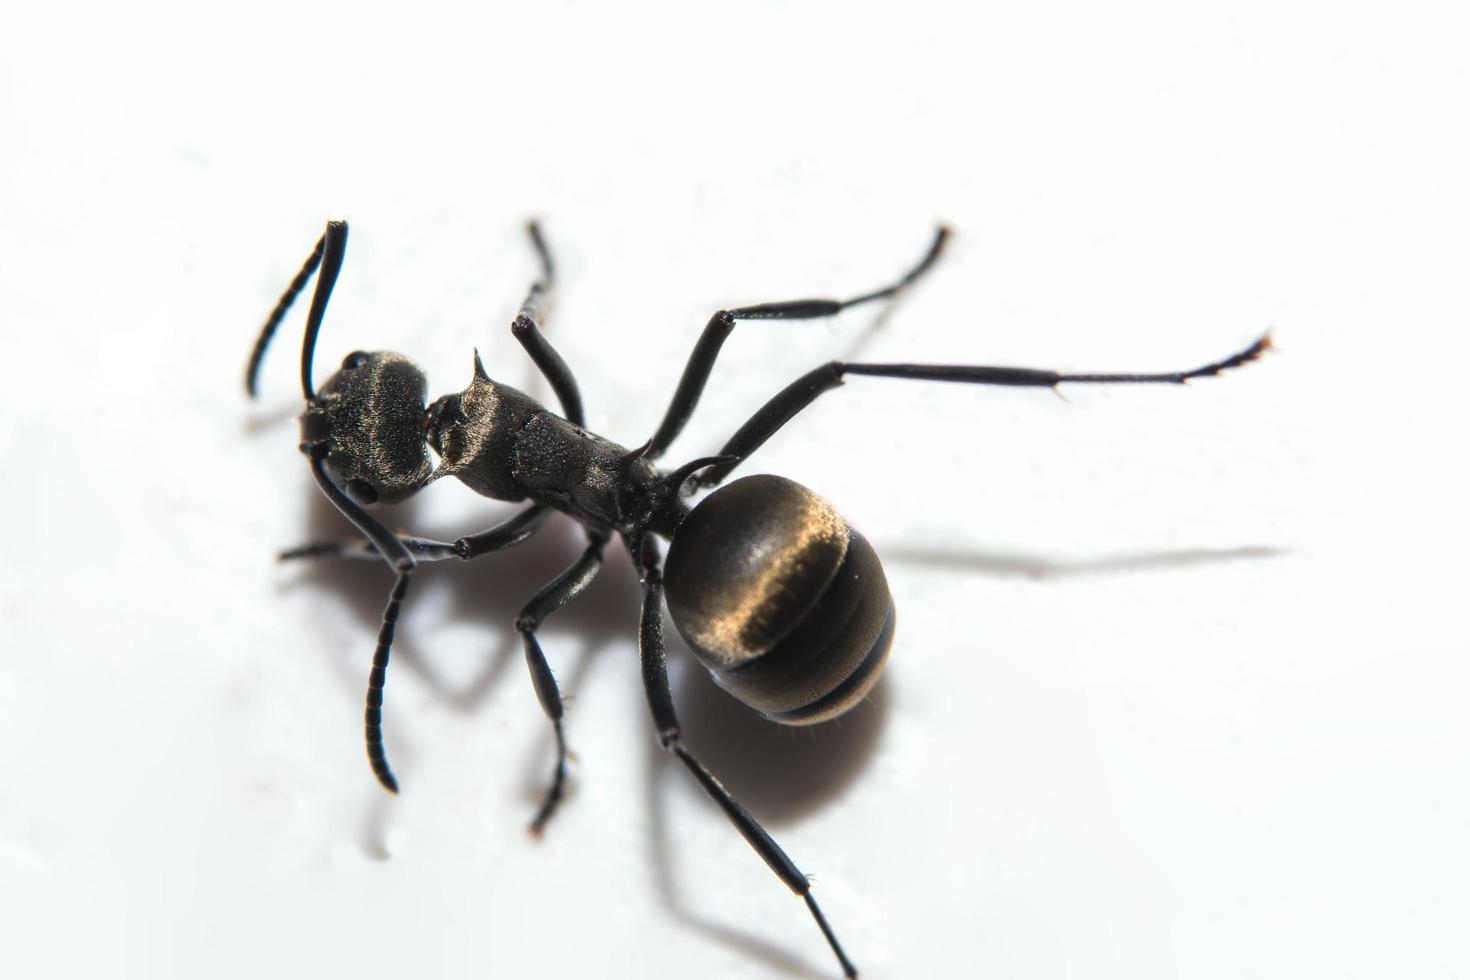 hormiga negra sobre fondo blanco foto